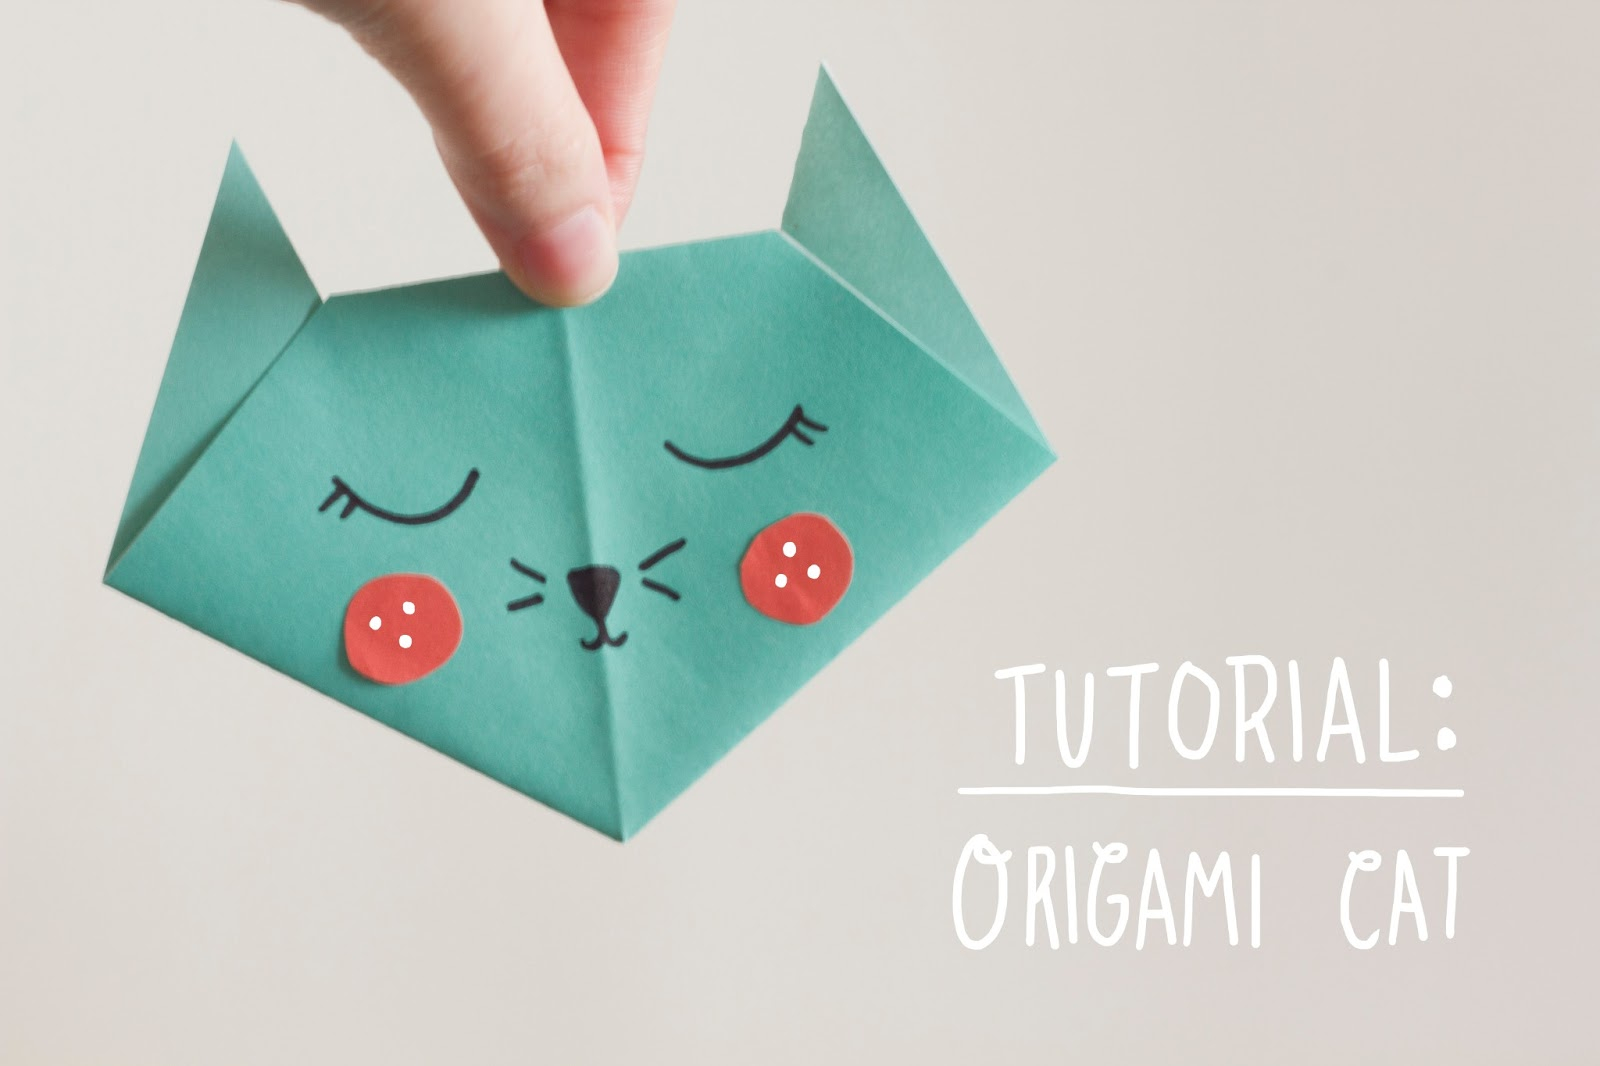 Origami Cat Tutorial Nook Cranny Tutorial Origami Cat